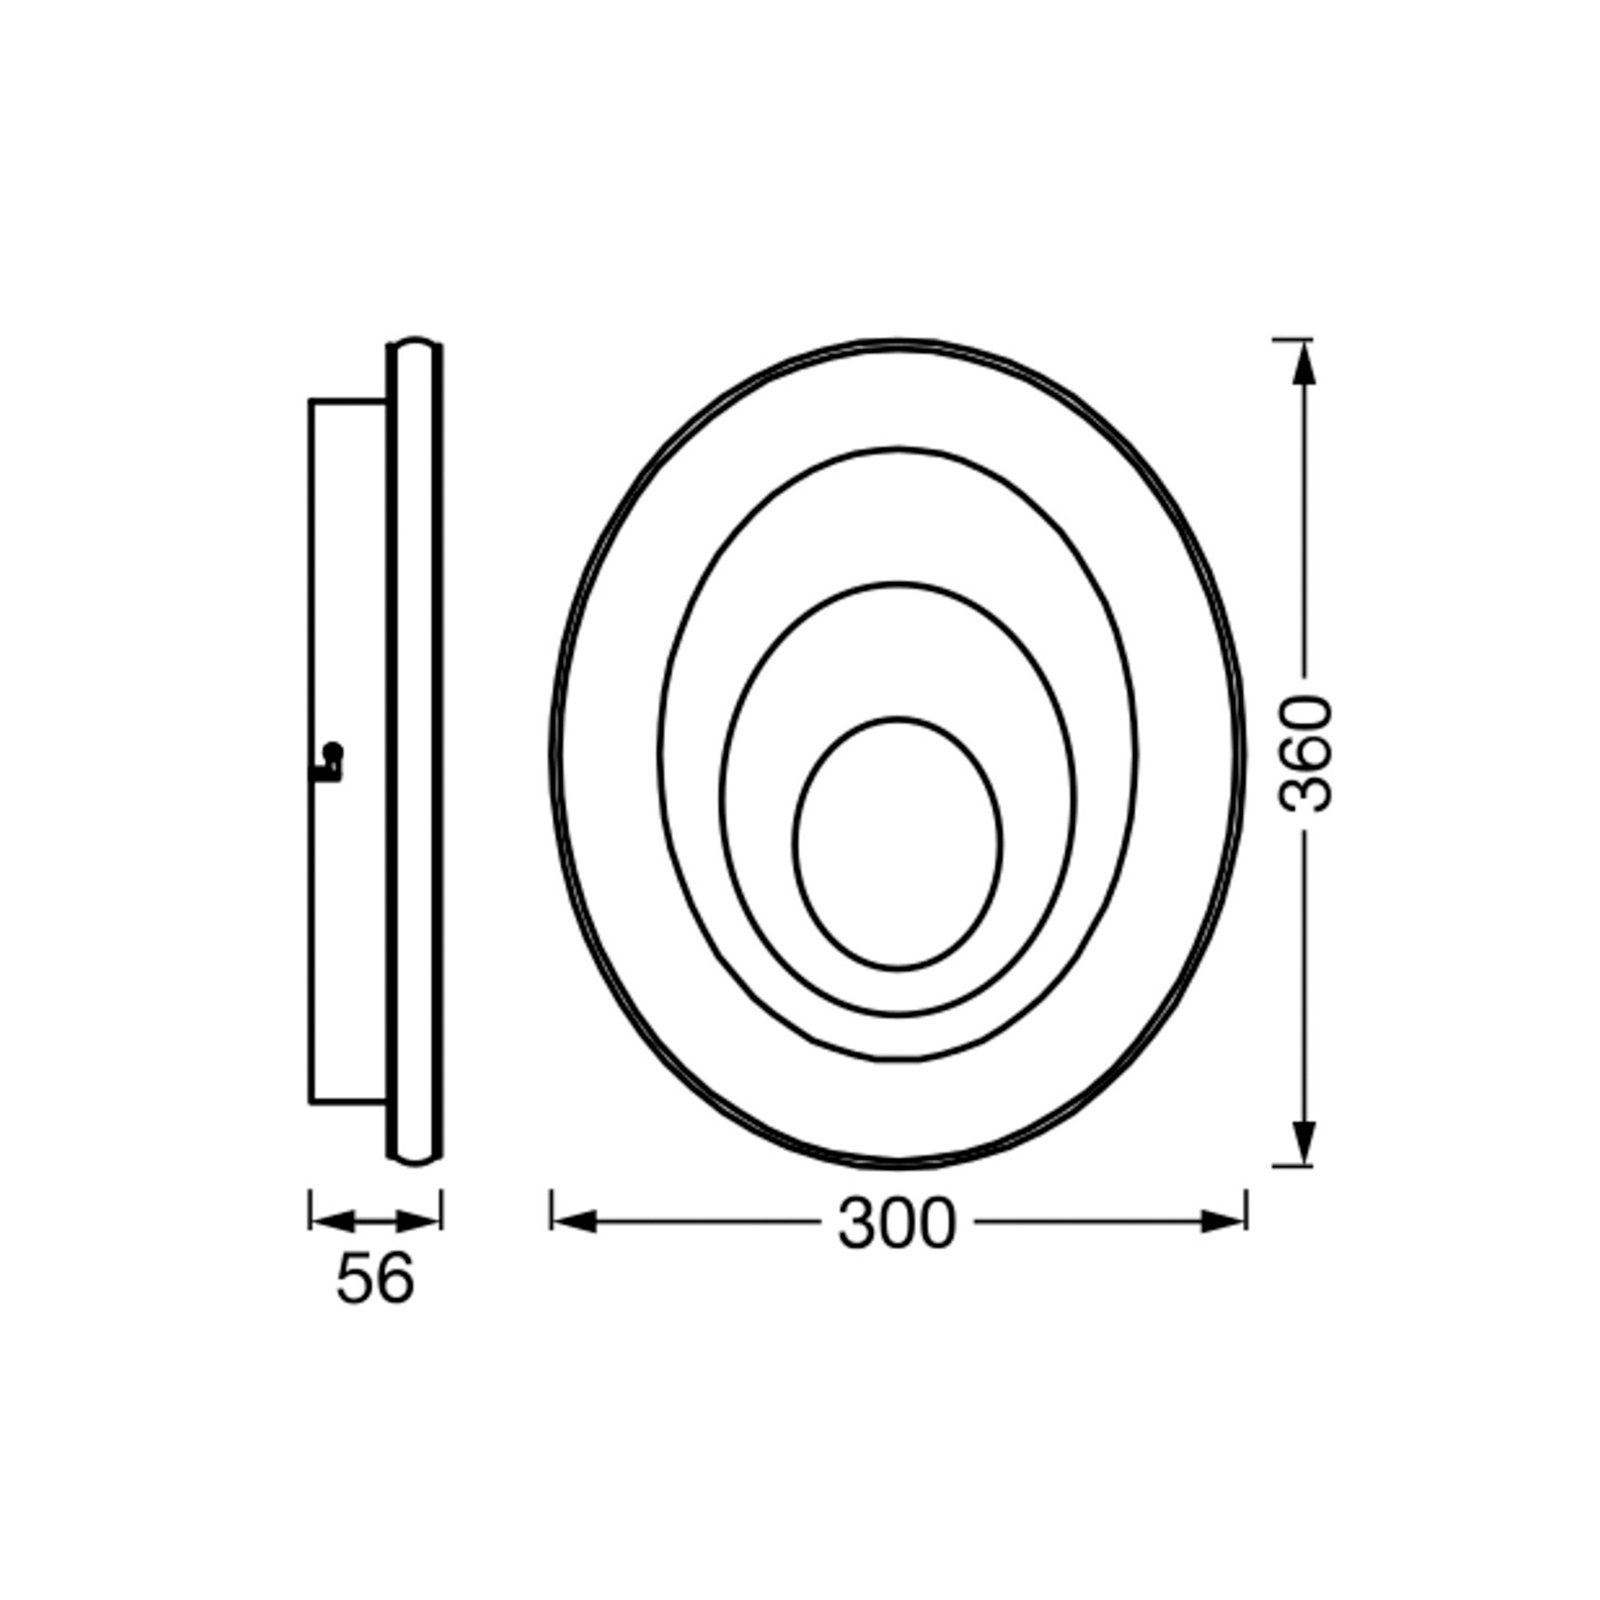 LEDVANCE Orbis Spiral Oval LED-Deckenlampe 36x30cm